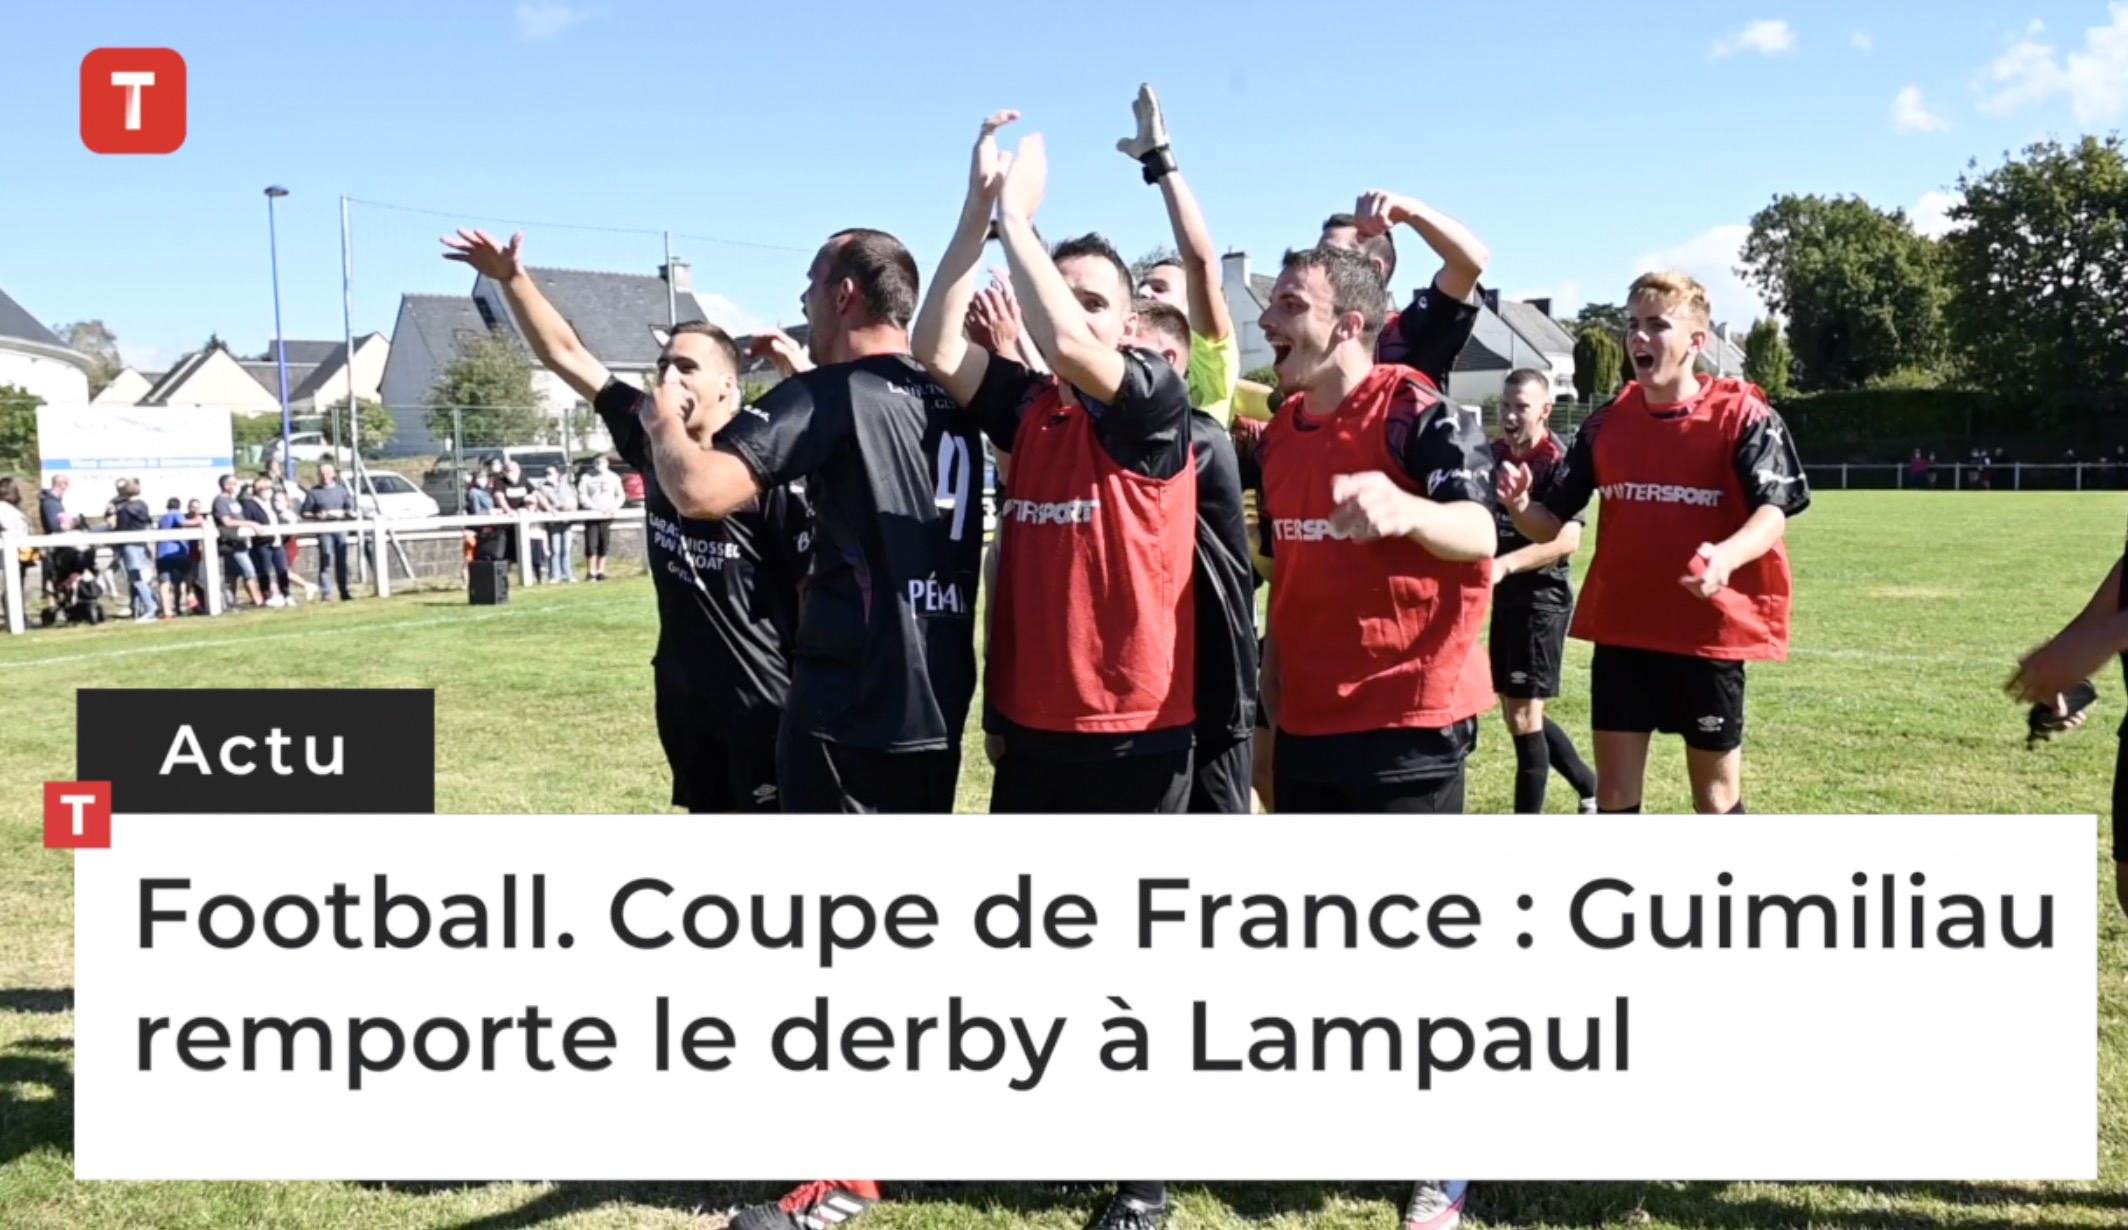 Football. Coupe de France : Guimiliau remporte le derby à Lampaul  (Le Télégramme)